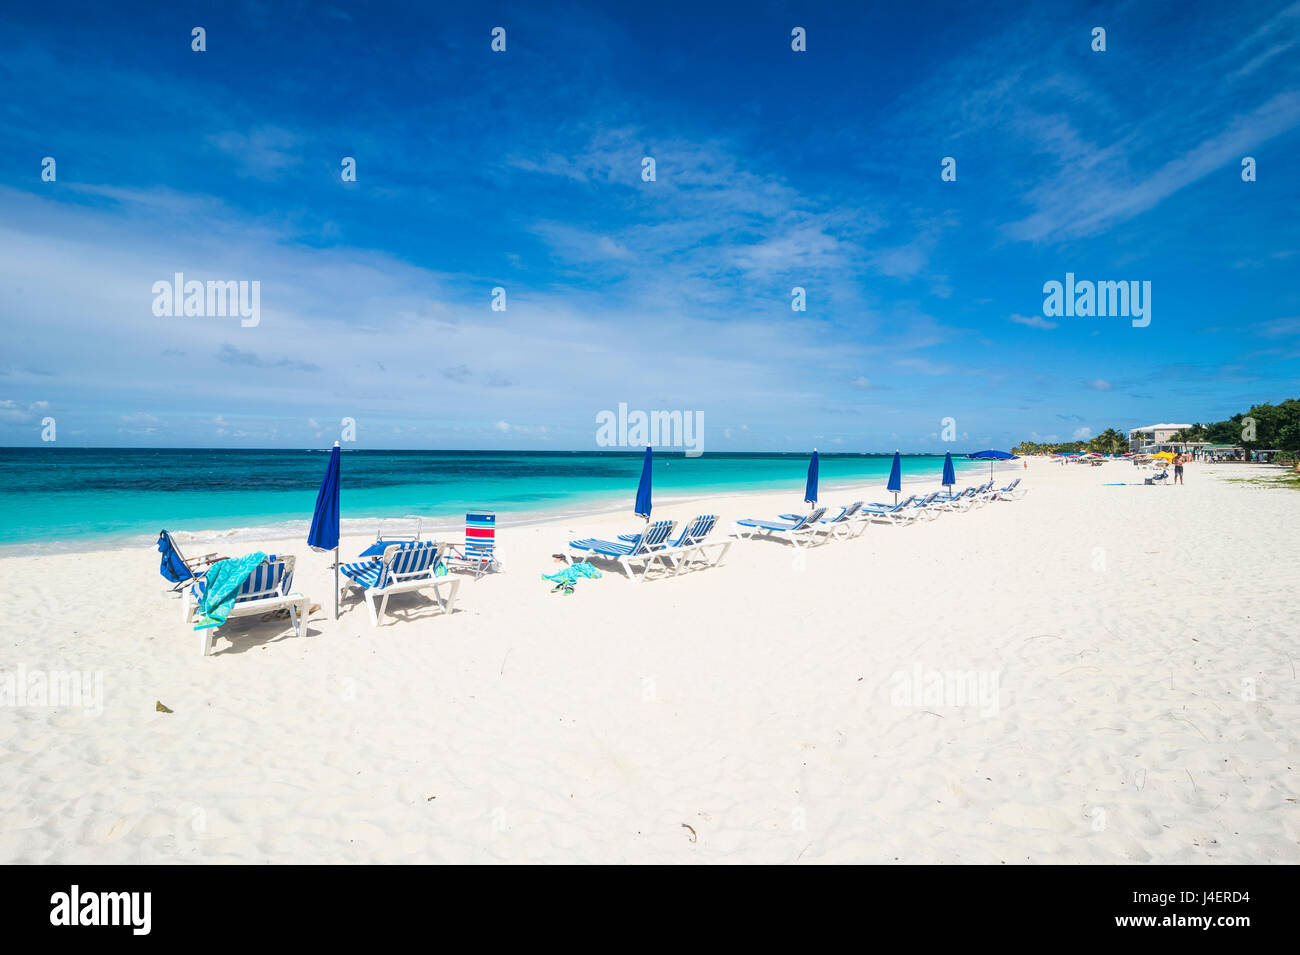 Chaises longues sur world class Shoal Bay East Beach, Anguilla, territoire britannique d'Outremer, Antilles, Caraïbes, Amérique Centrale Banque D'Images